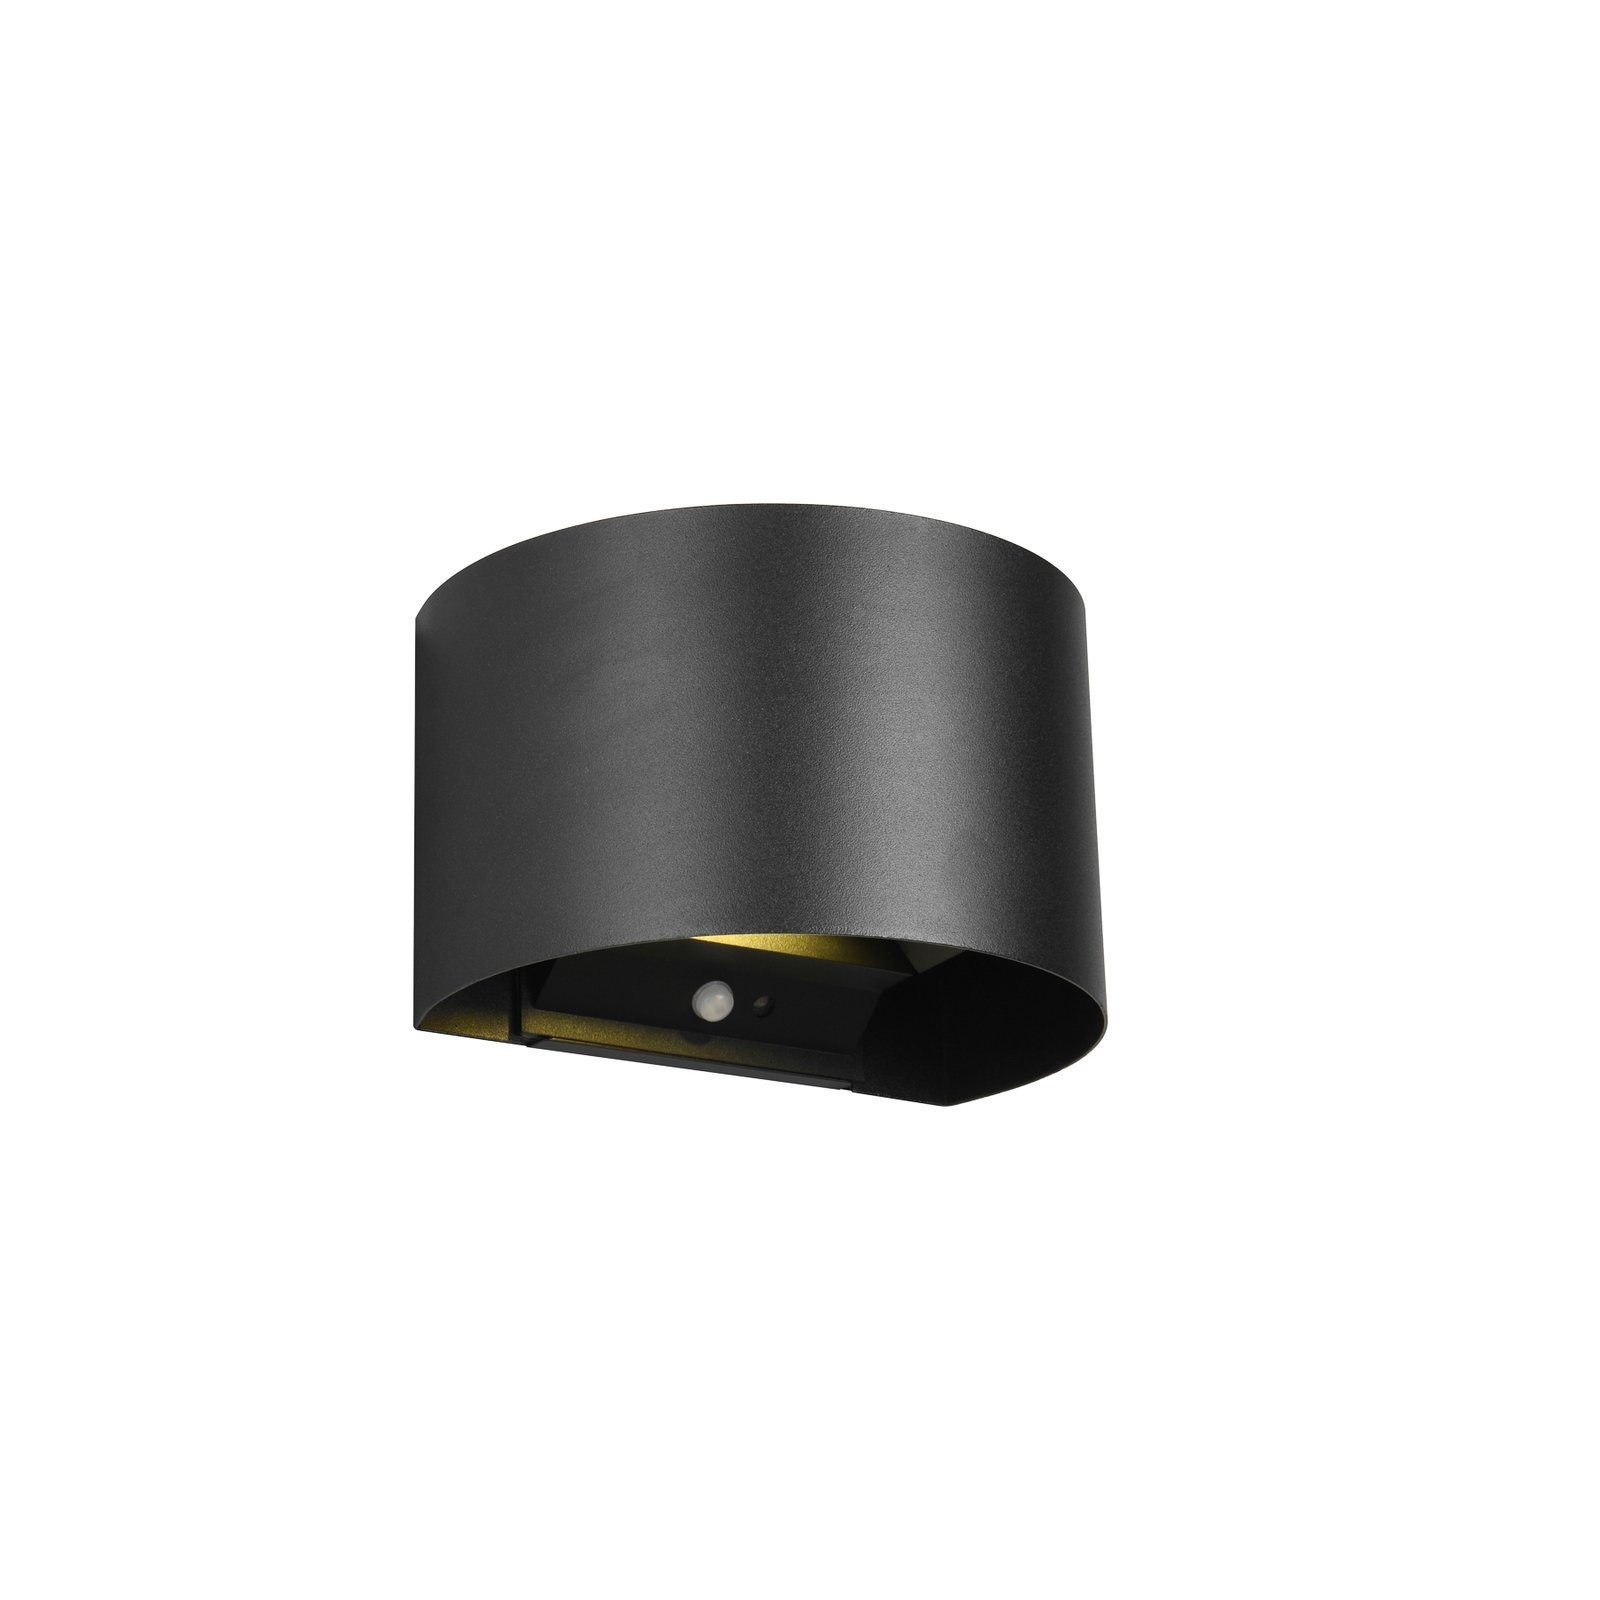 LED genopladelig udendørs væglampe Talent, sort, bredde 16 cm Sensor